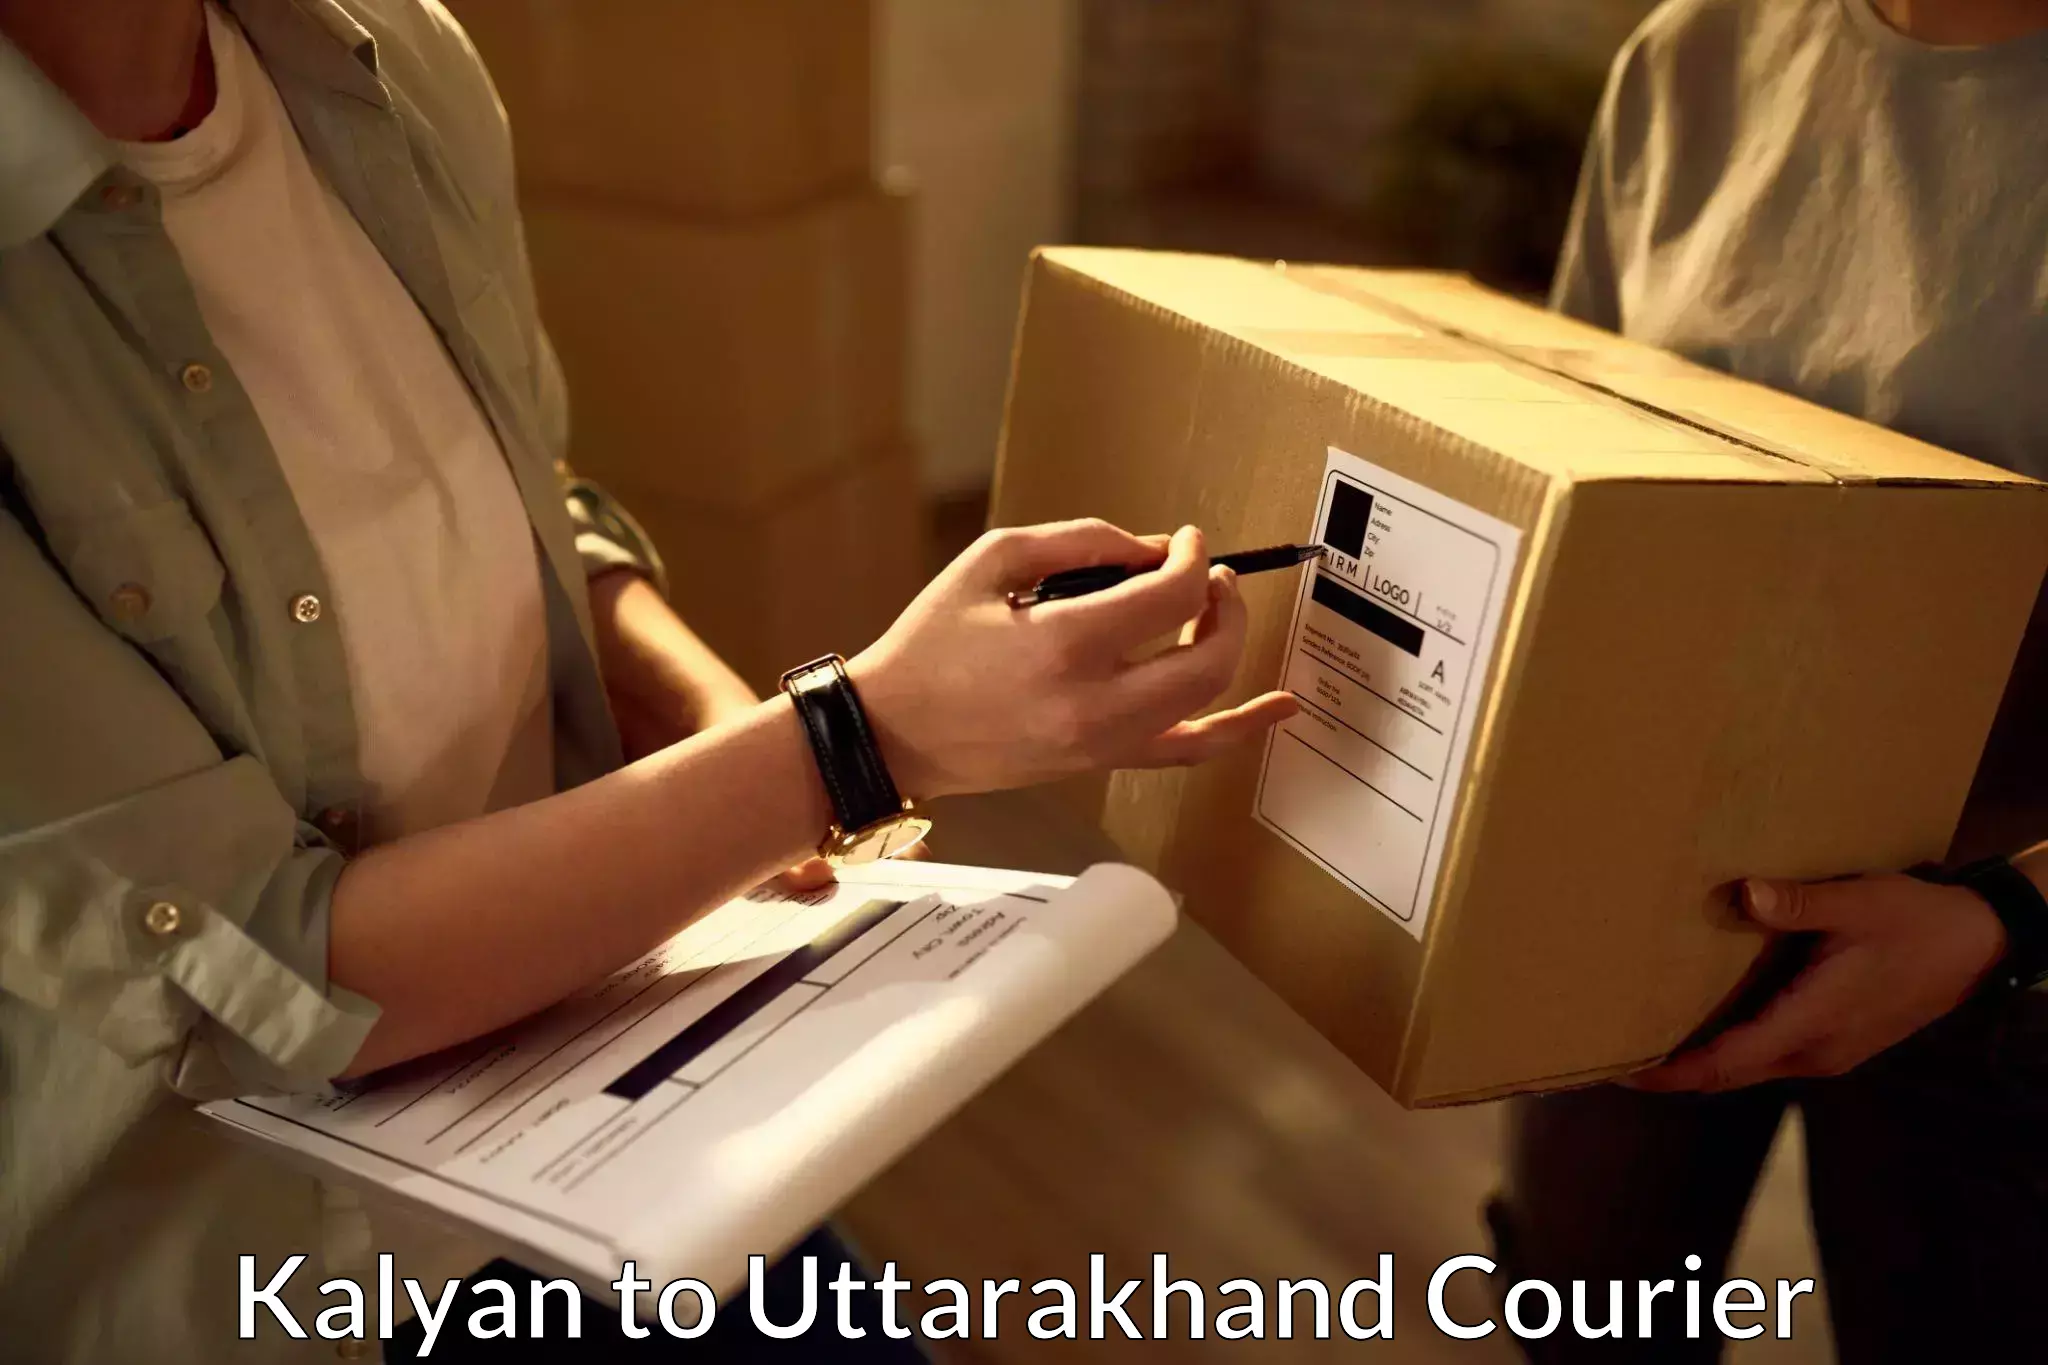 Courier service comparison Kalyan to Uttarakhand